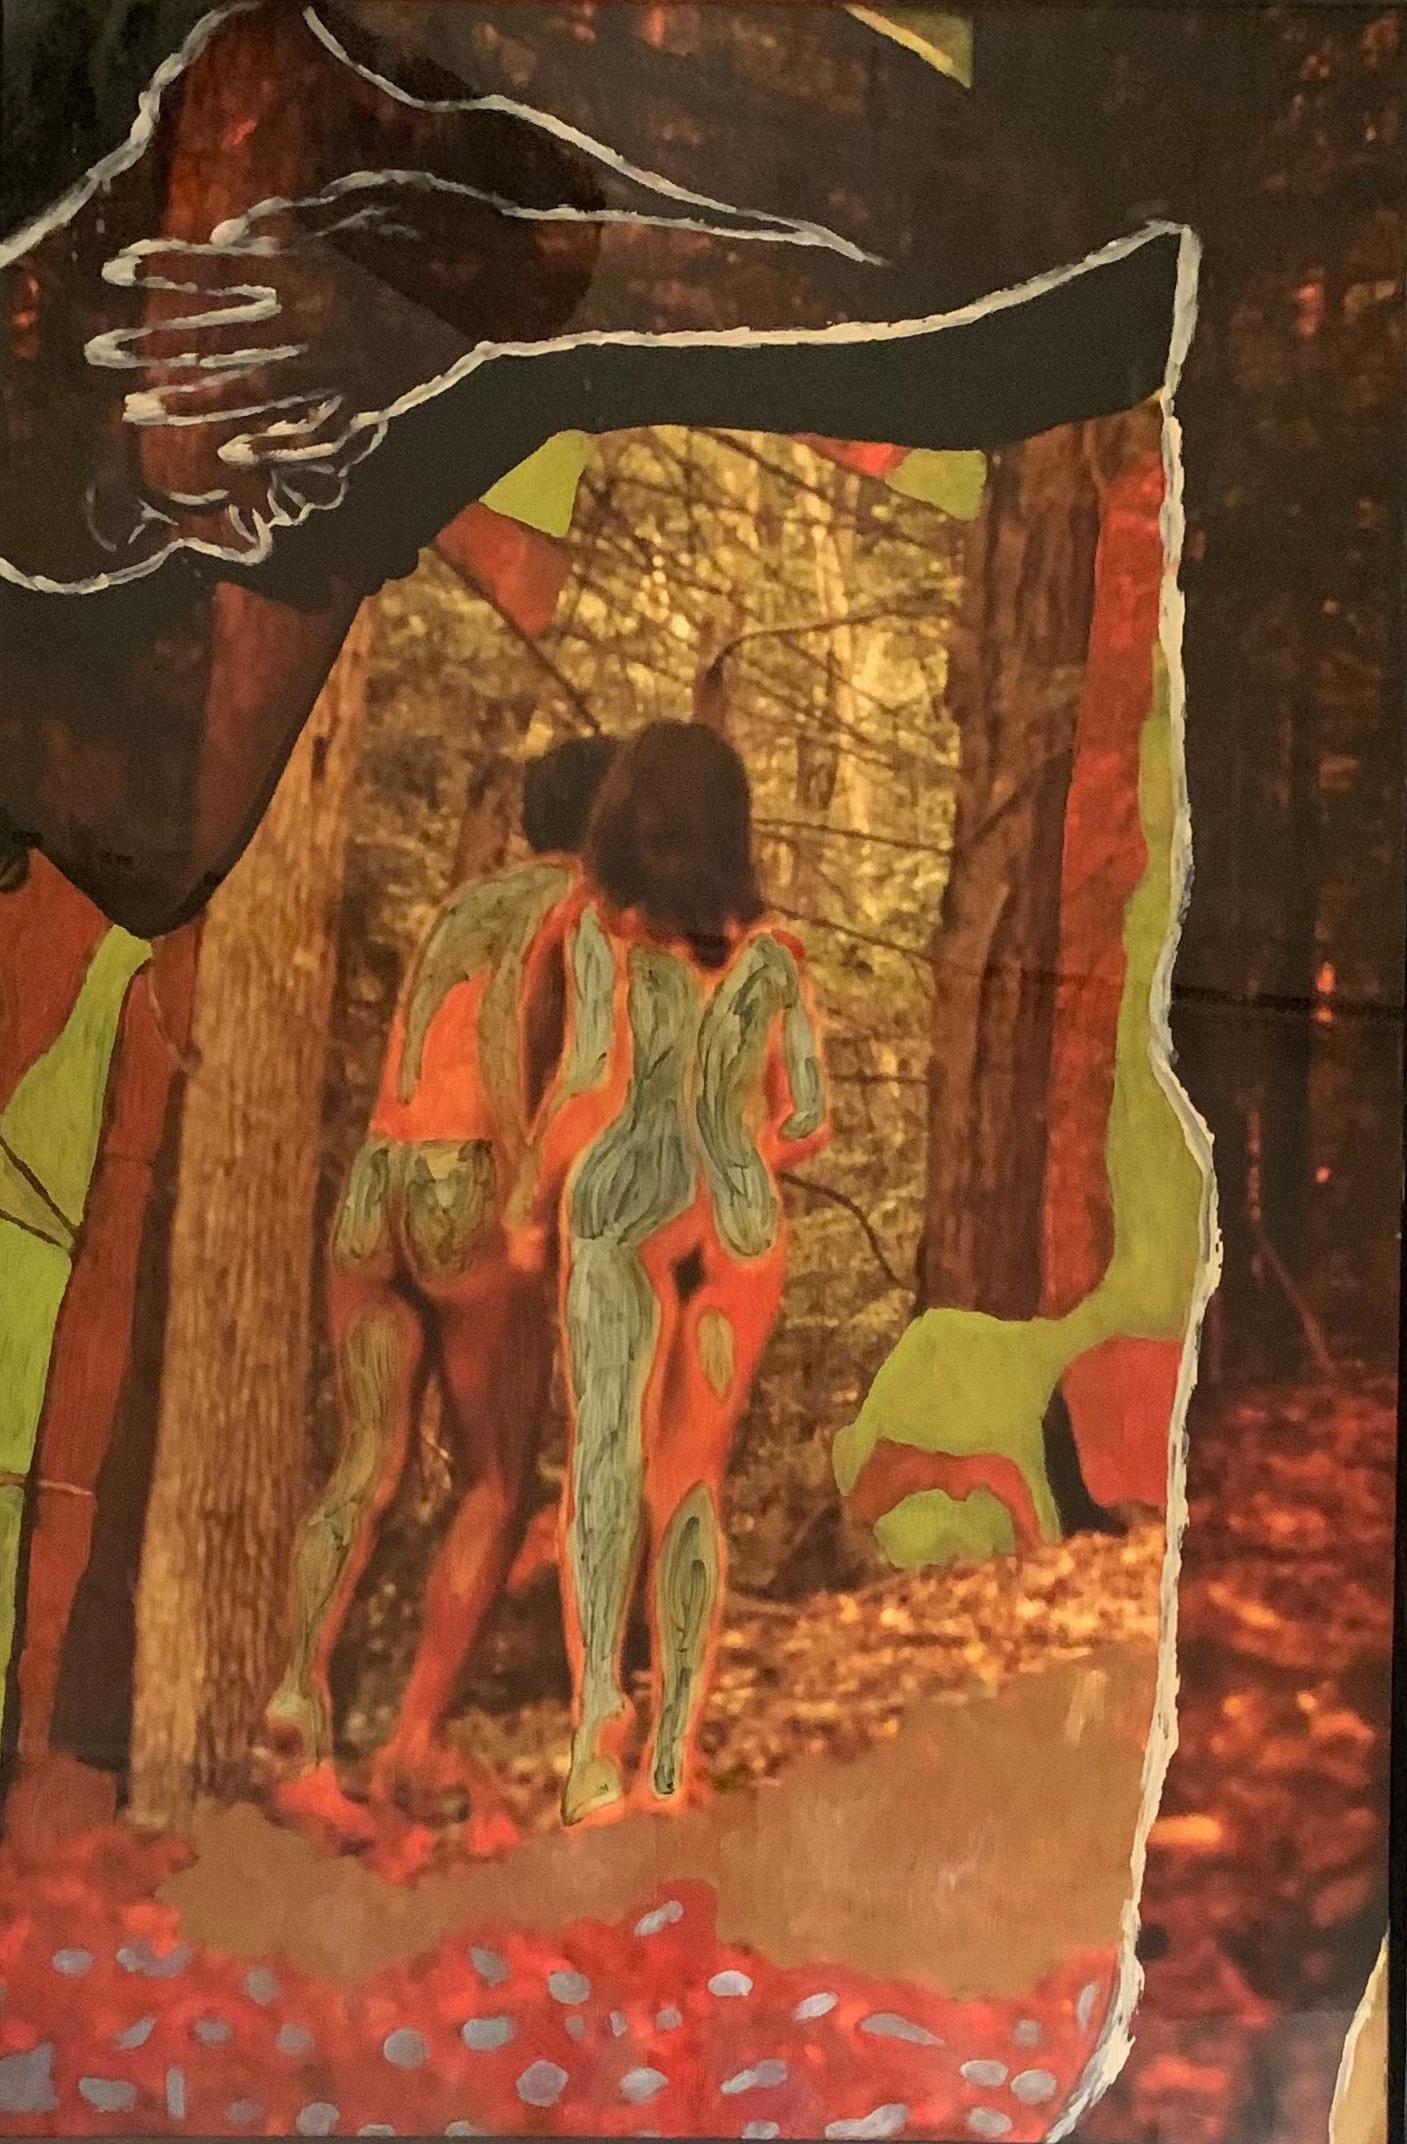 Doron - "Liebe im Wald" Fotografie und Öl auf Papier. Gerahmt mit Glas.

Ein originelles Stück. Ein Unikat.

Das Gemälde wird mit einem Echtheitszertifikat und einem Wertgutachten geliefert.

Vertreten durch American Art Gallery Carmel Kalifornien